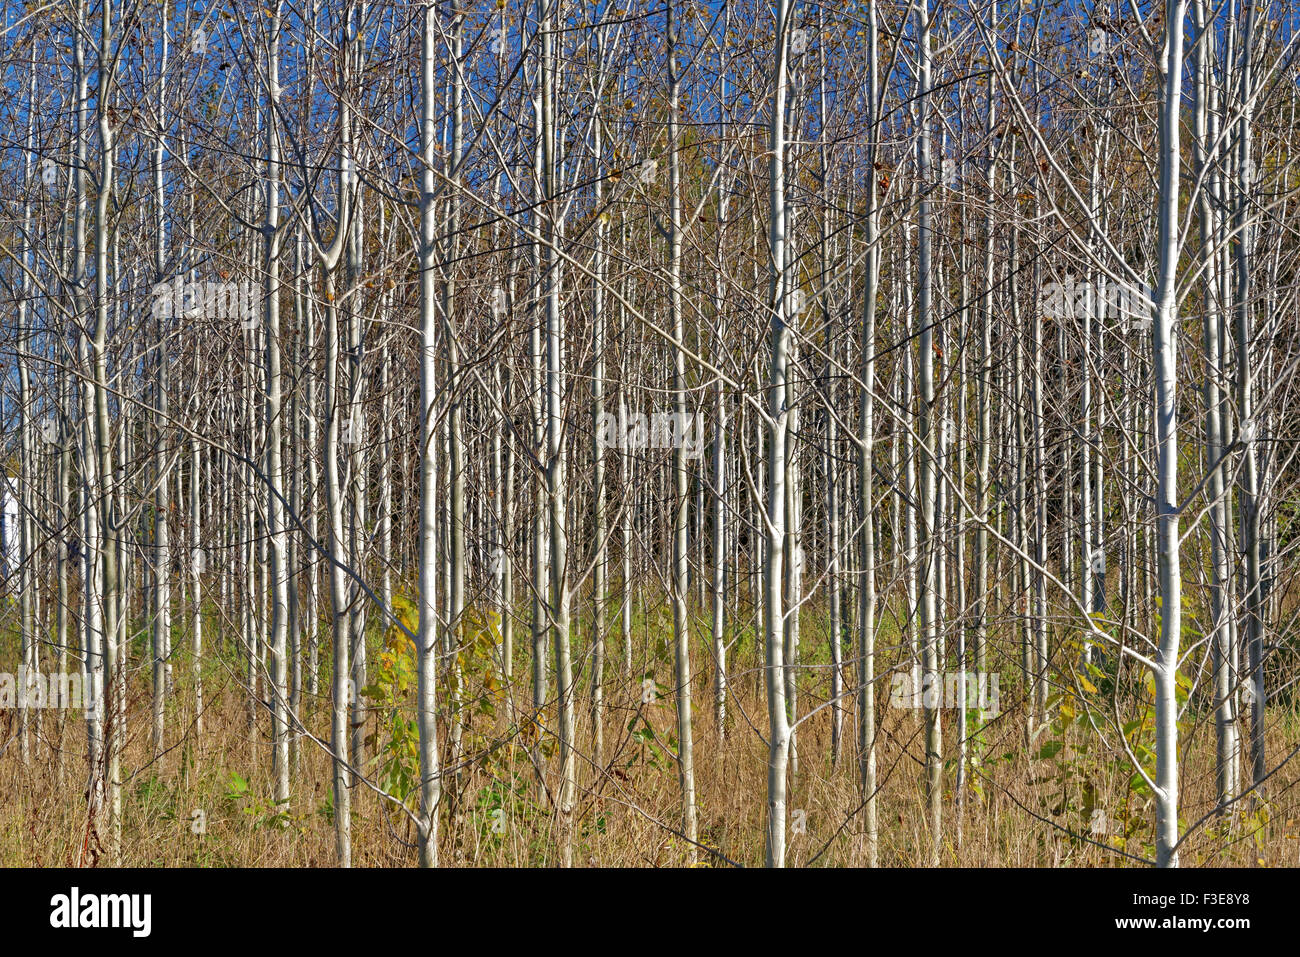 Ten-years-old growing aspen wood in October. Stock Photo